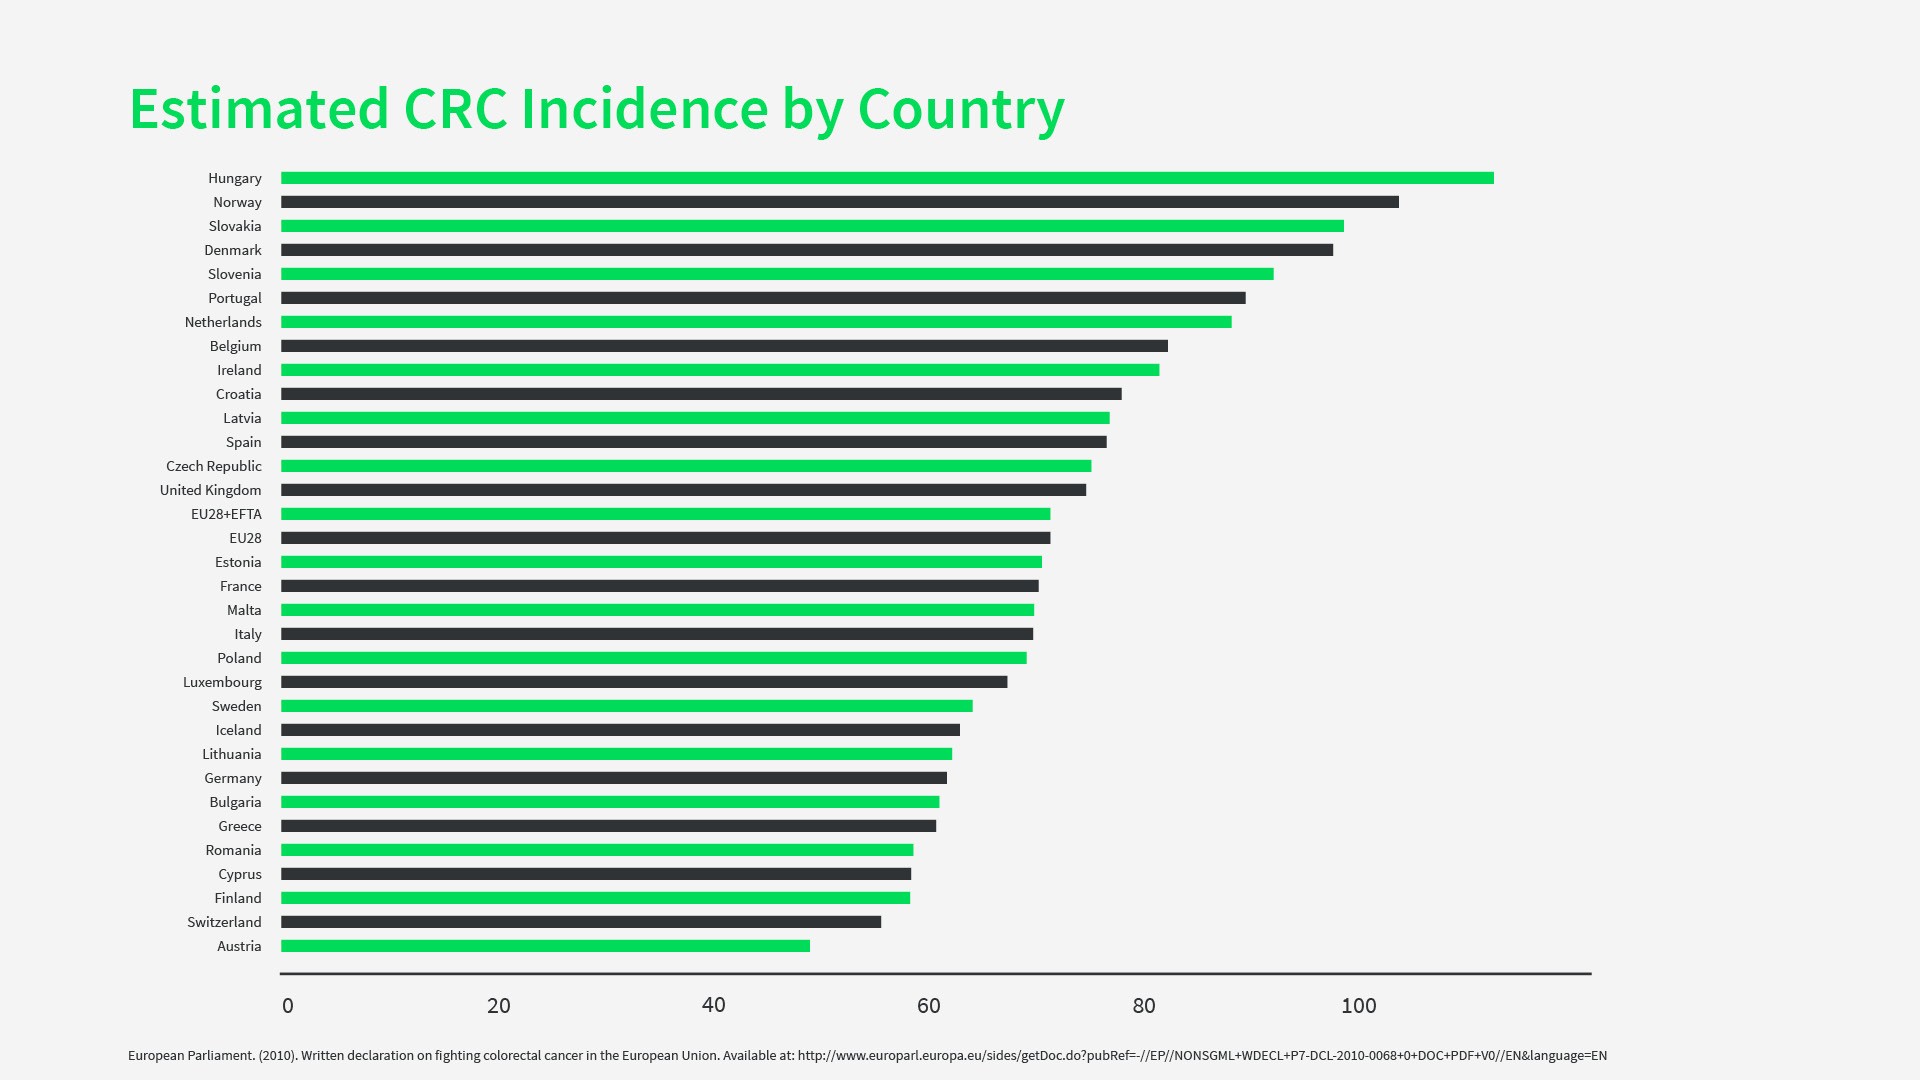 Estimated CRC incidences